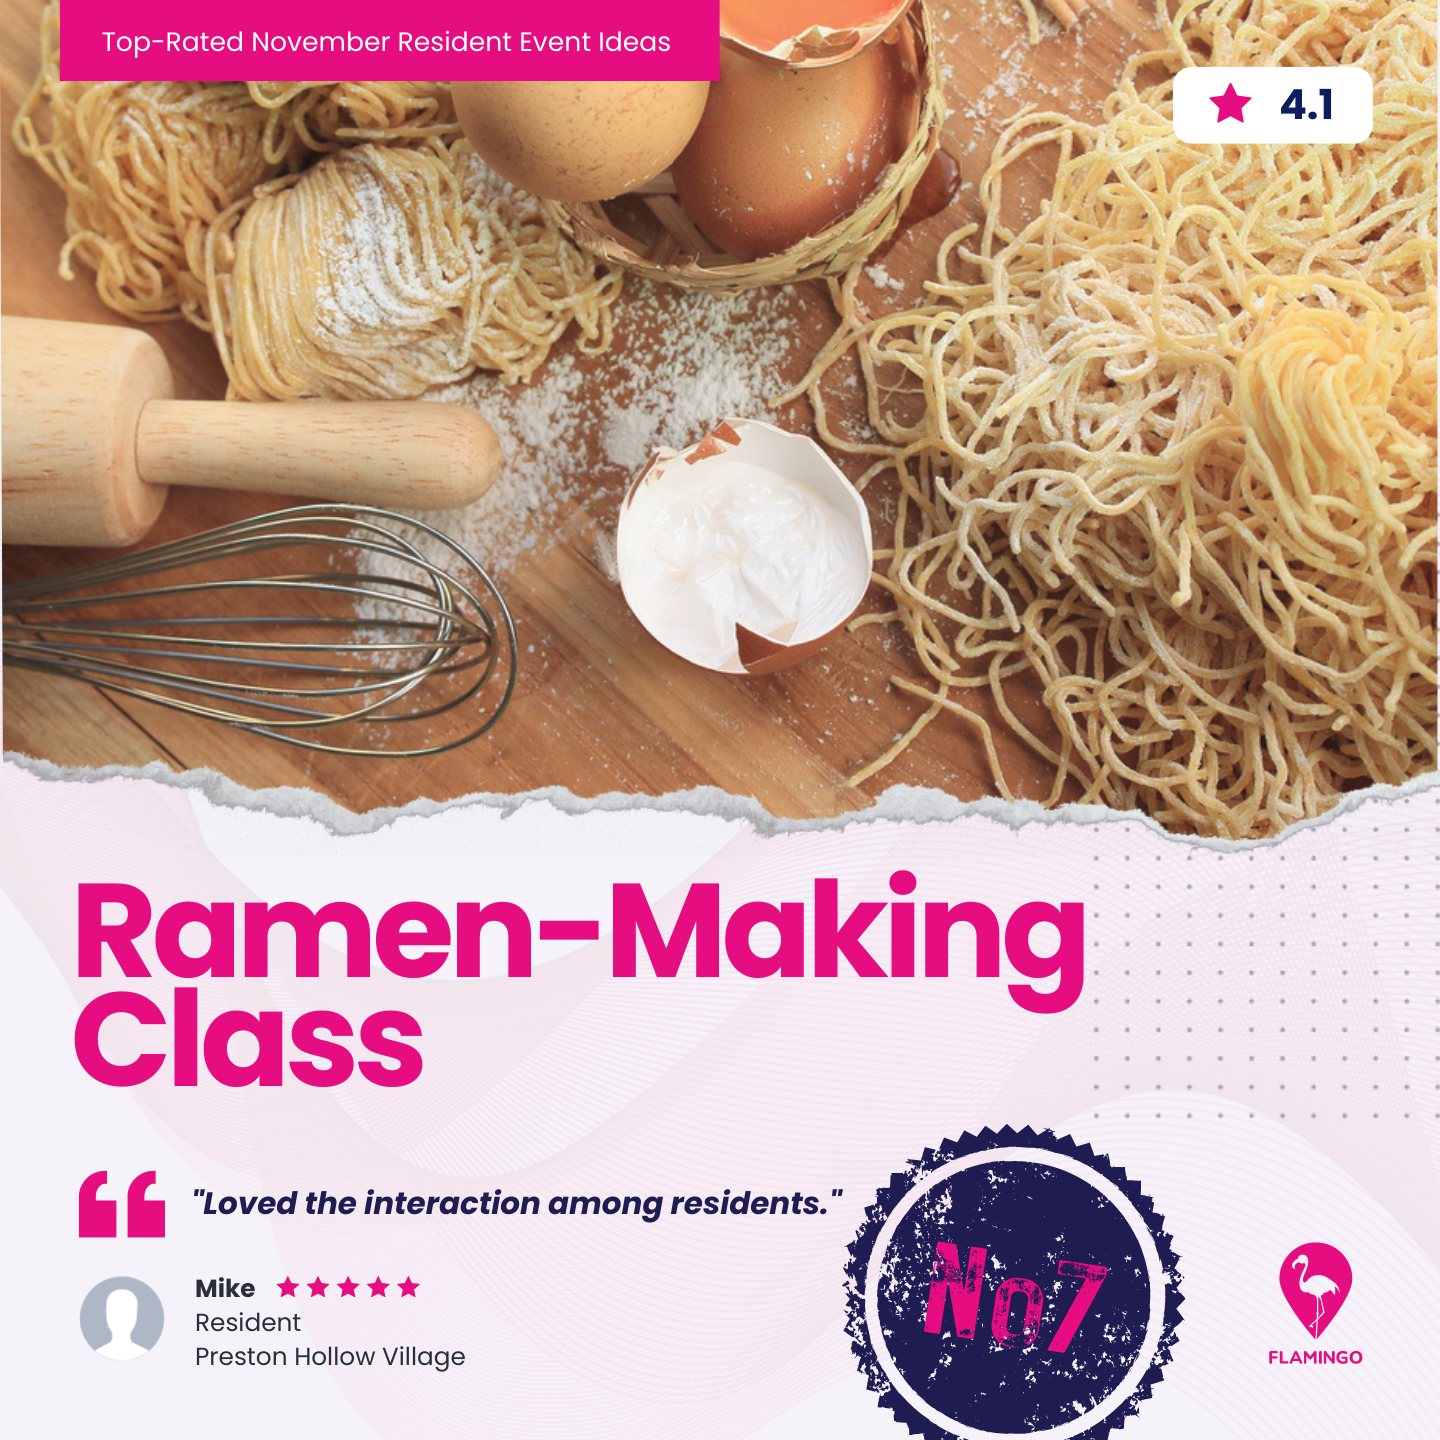 Ramen-Making Class | November Resident Event Ideas